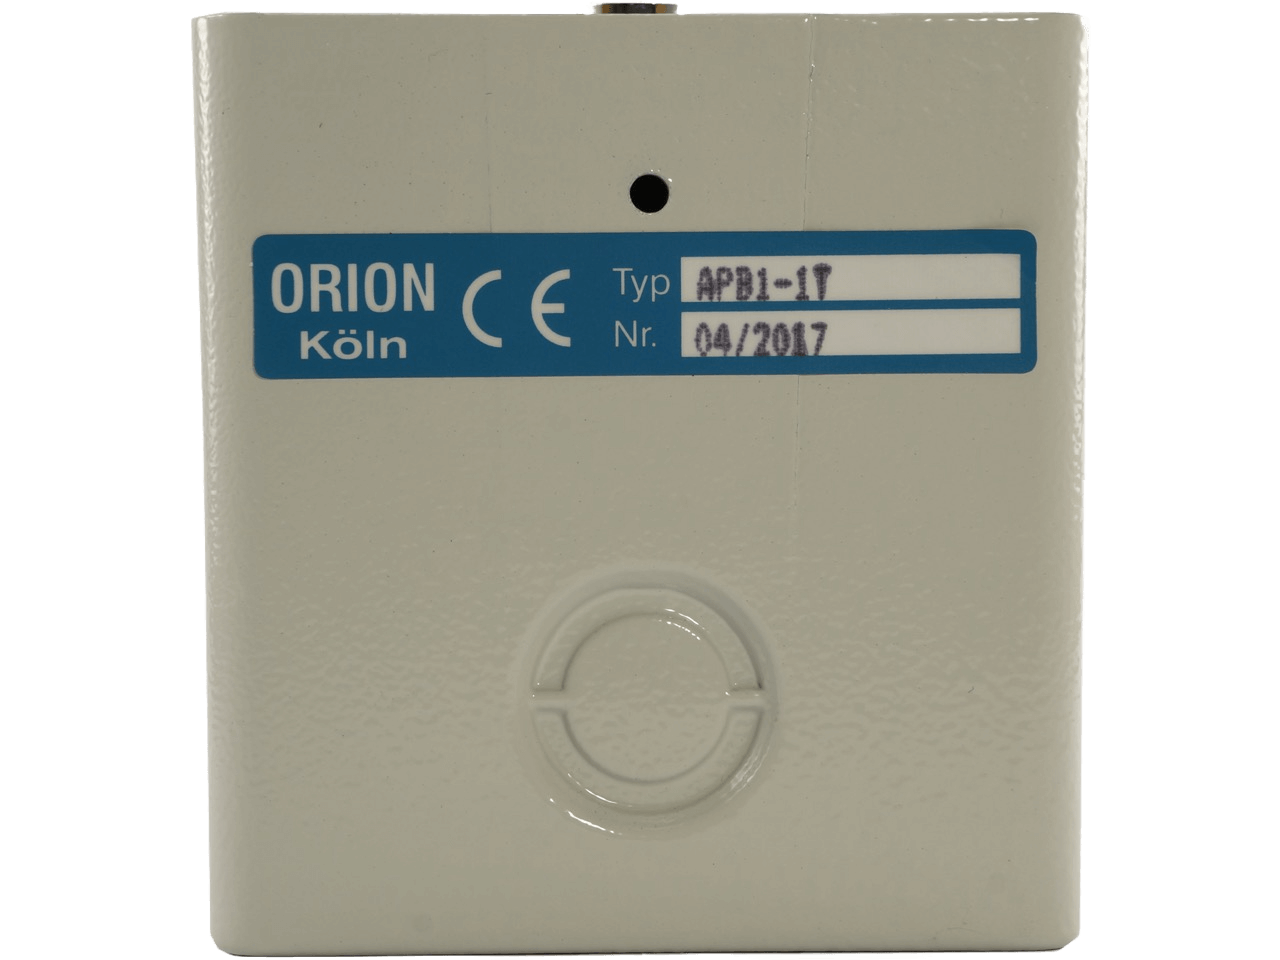 Orion APB 1-1T Interrupteur à clé dans un boîtier mural 1